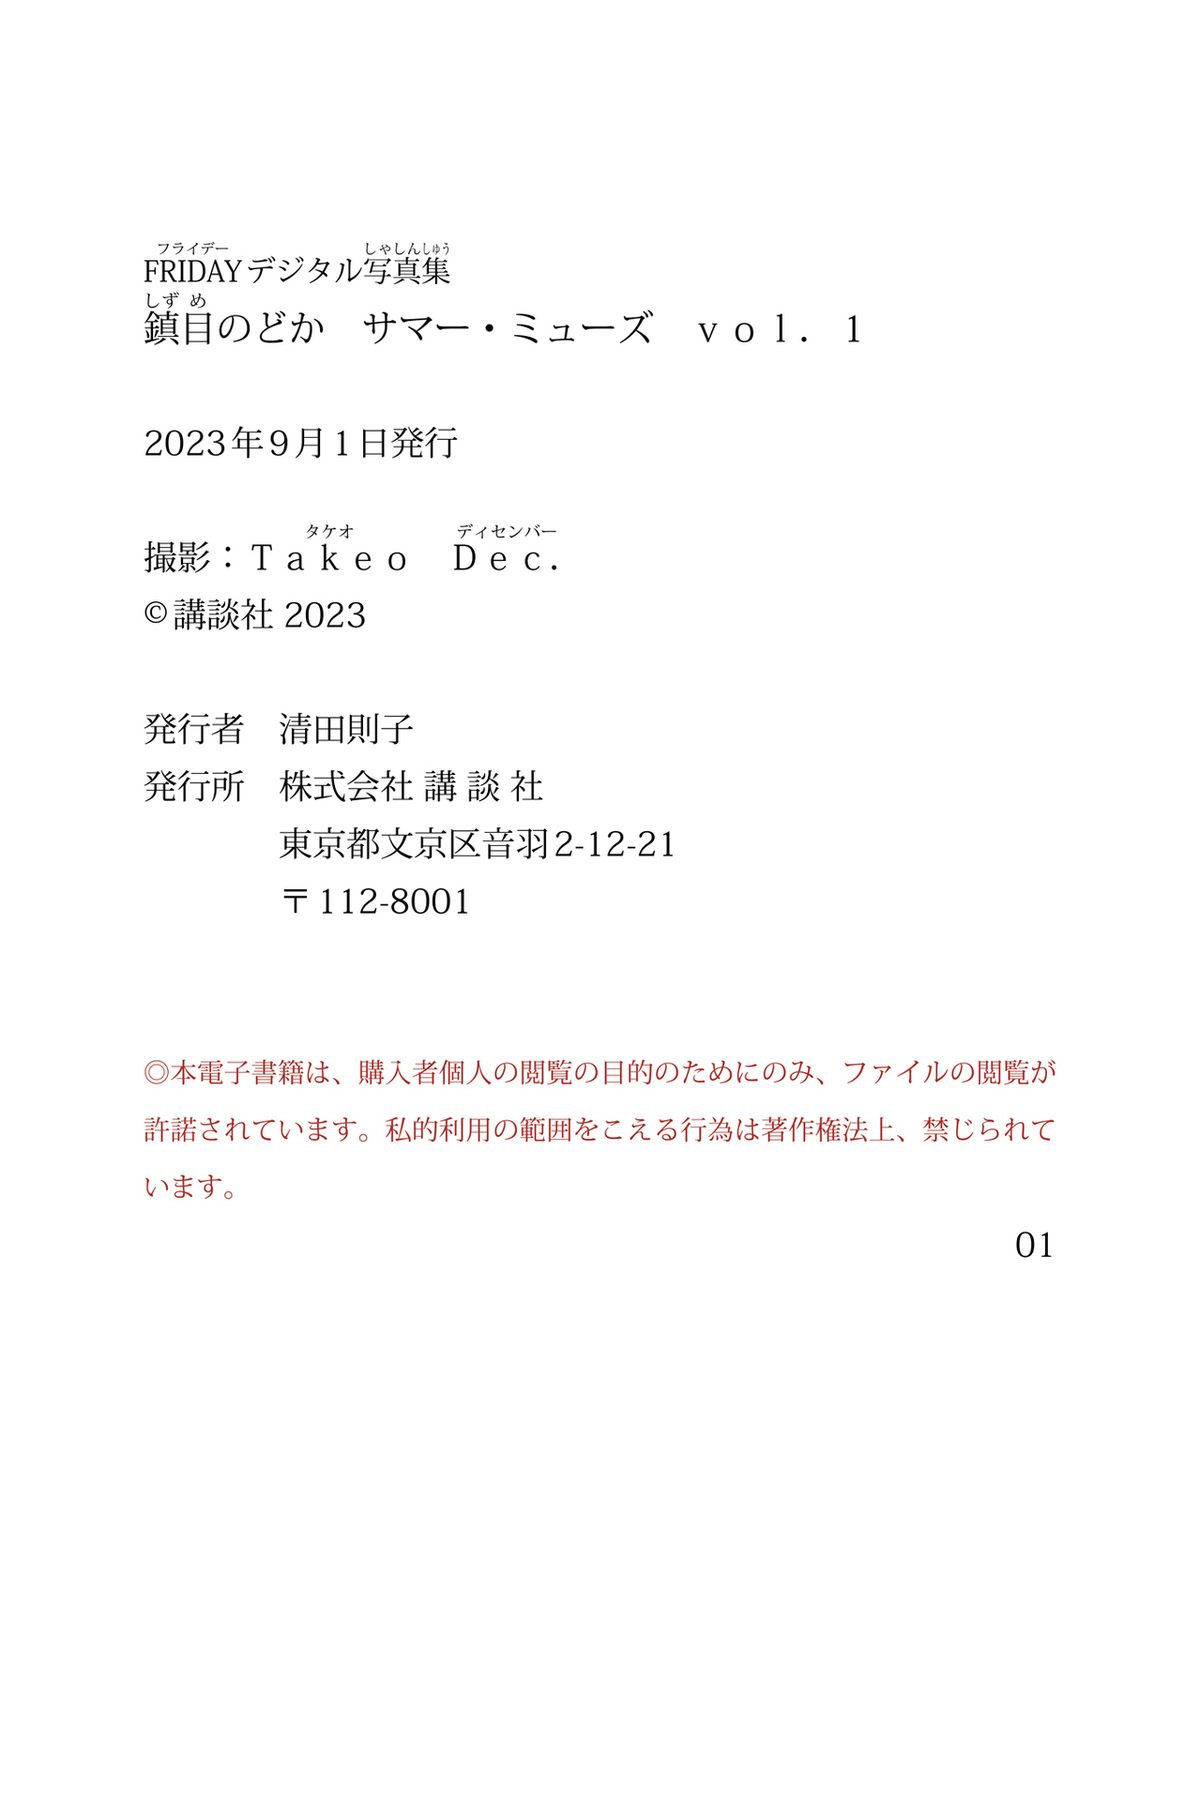 FRIDAY Nodoka Shizume 鎮目のどか サマー ミューズ Vol 1 0067 5917950671.jpg